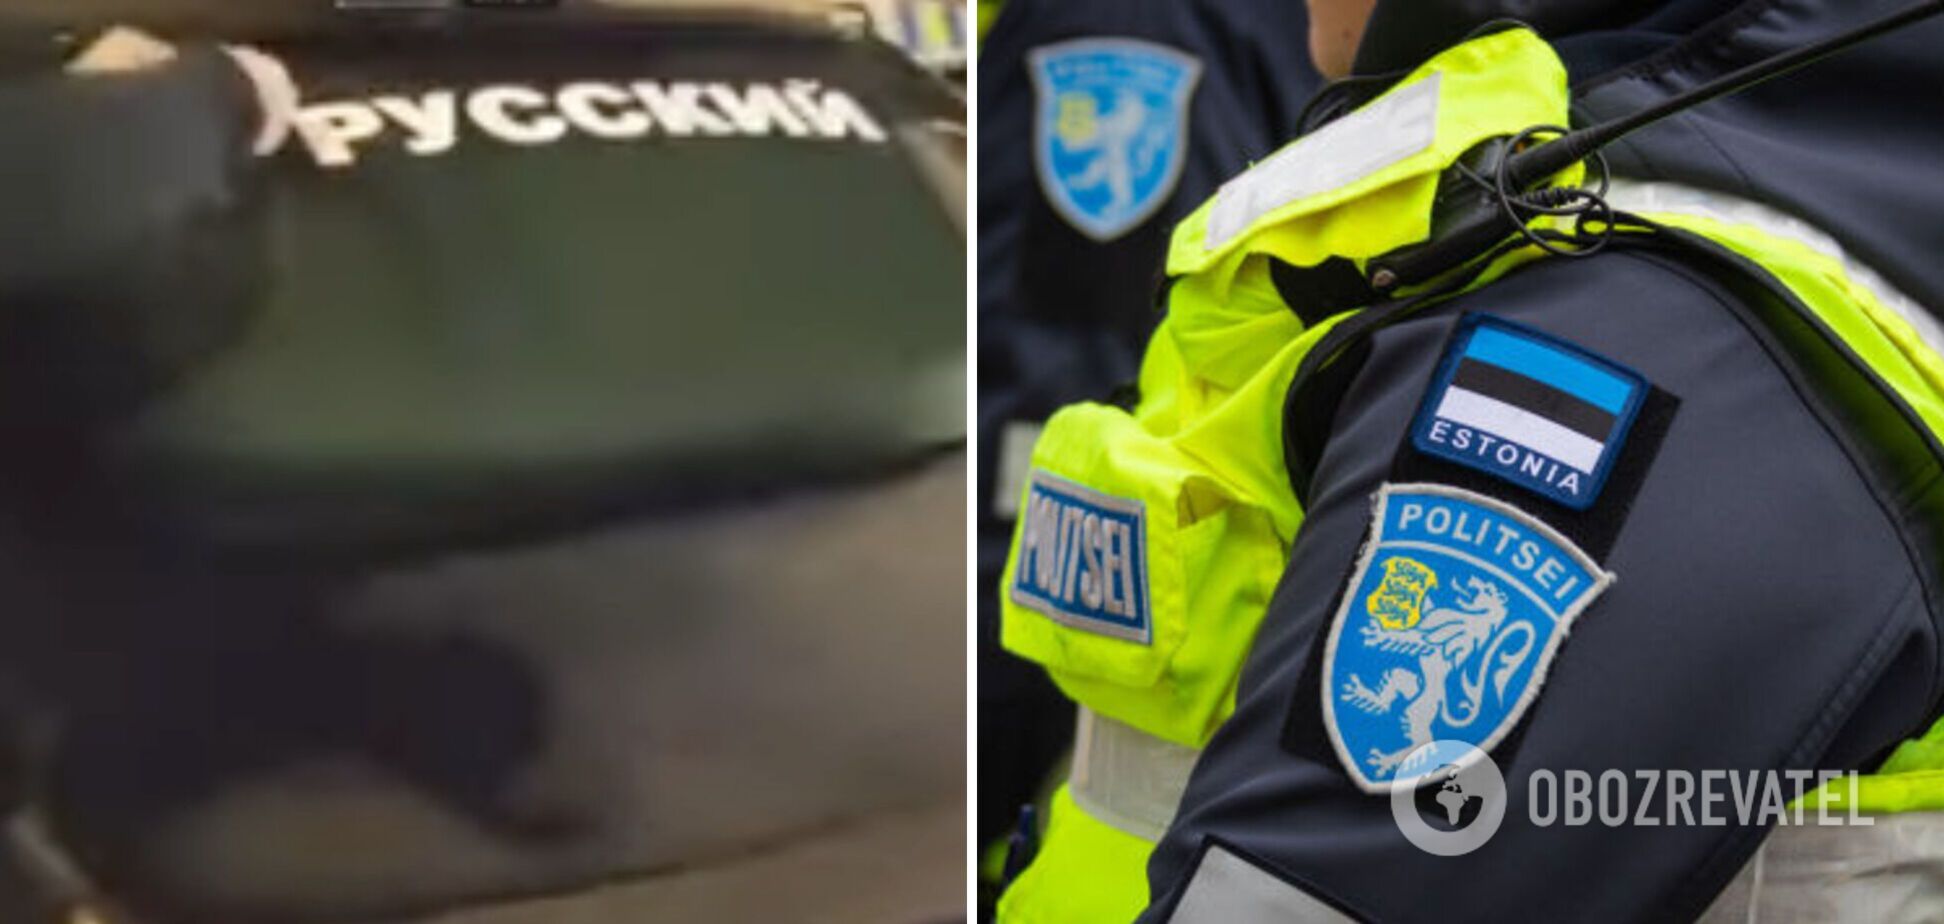 В Таллине россияне устроили истерику с бранью, потому что полиция заставила их содрать с авто наклейки 'Я русский'. Видео